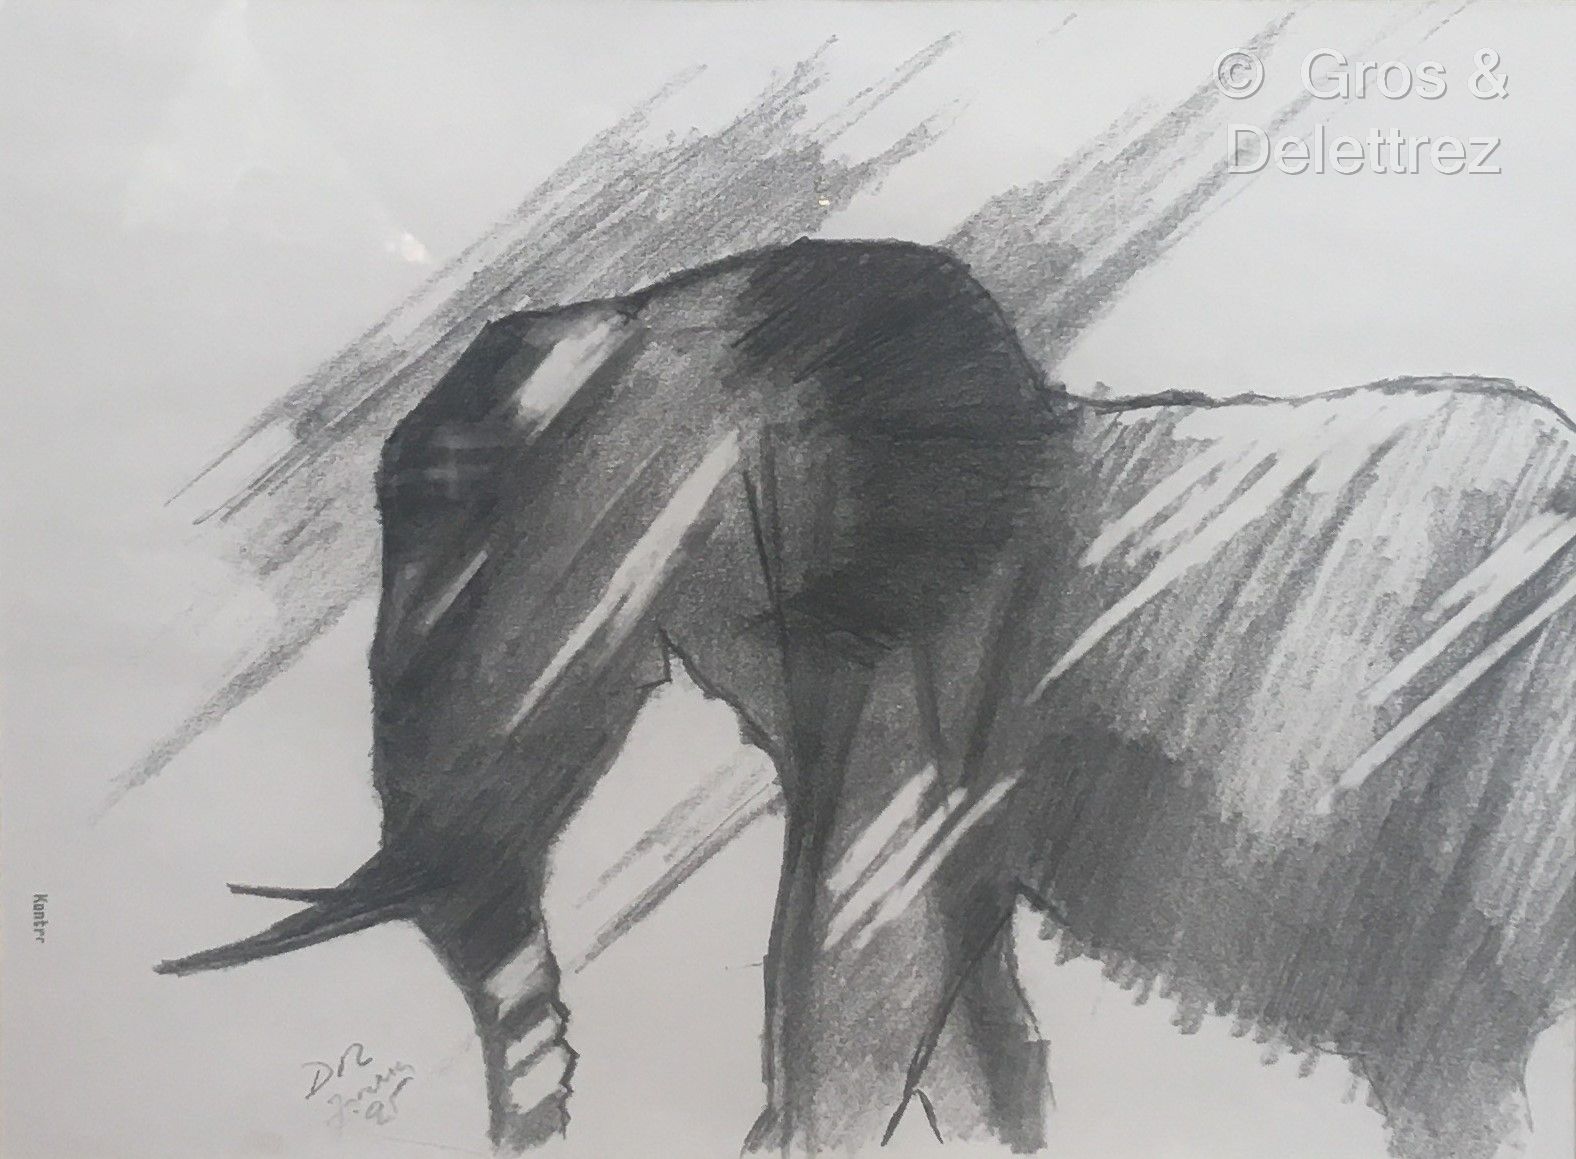 Null (E) Scuola contemporanea

Elefante di fronte

Elefante di profilo 

Amleto &hellip;